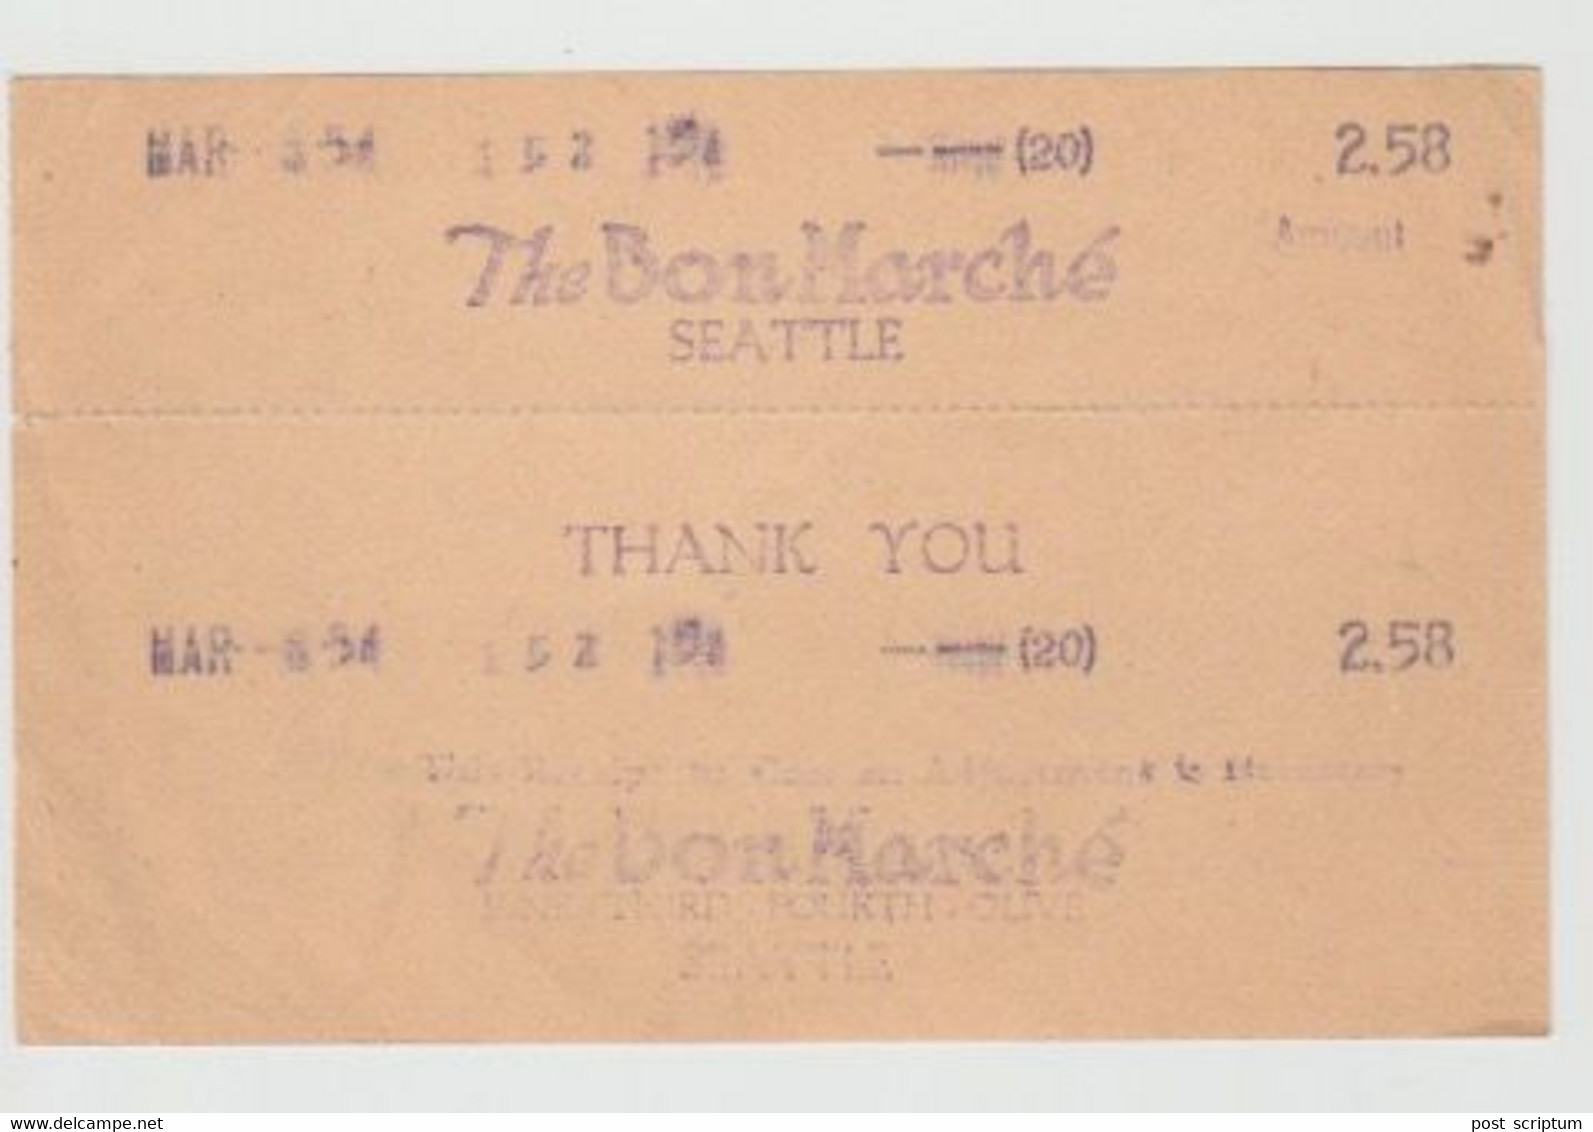 Vieux Papiers - Récipissé Facture The Bon Marché Seattle De 2,58 Dollars - United States